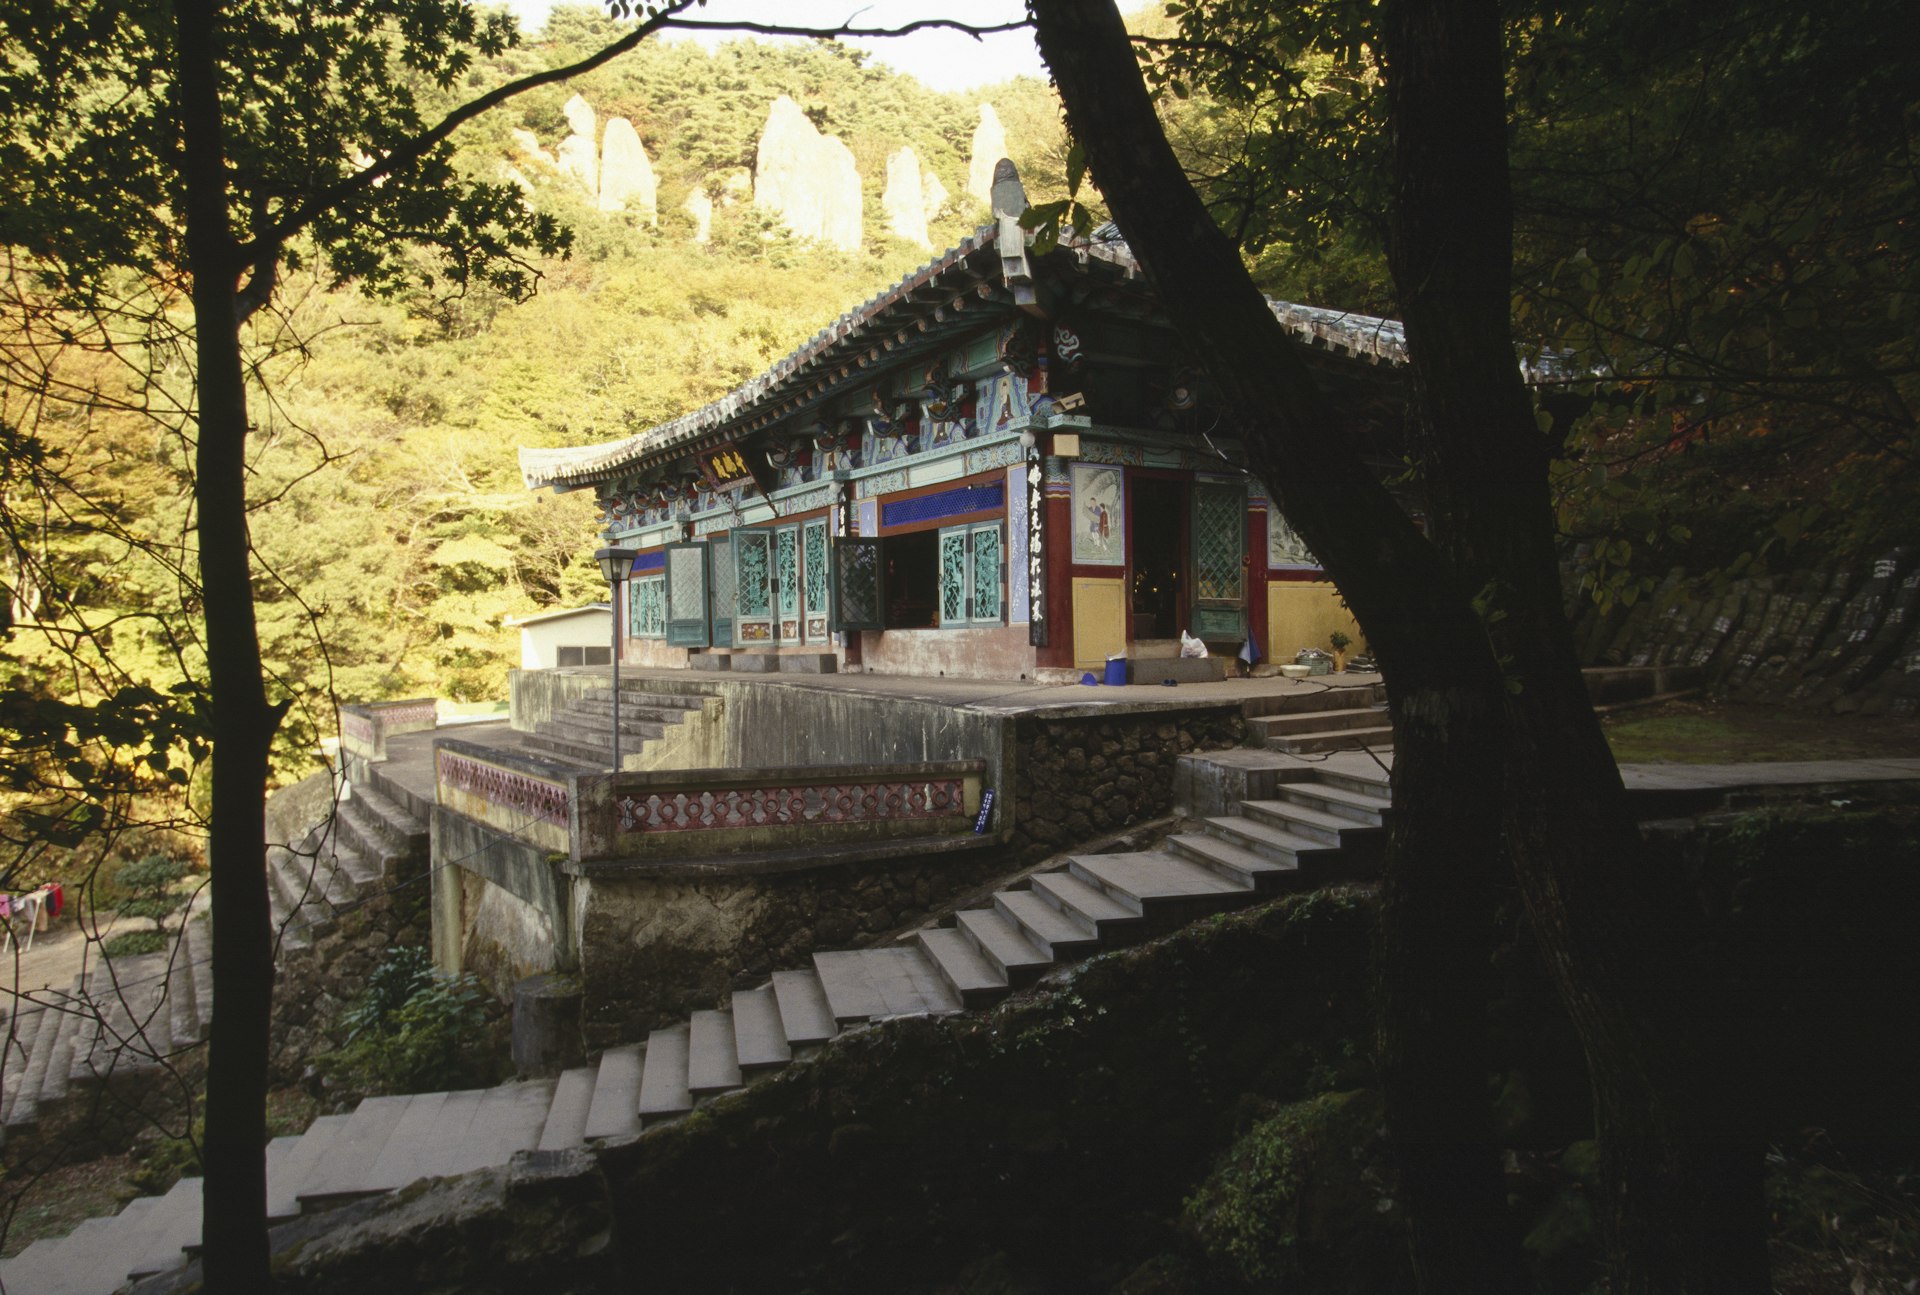 View of Chun Wang-sa Temple at Mount Hallasan National Park, South Korea